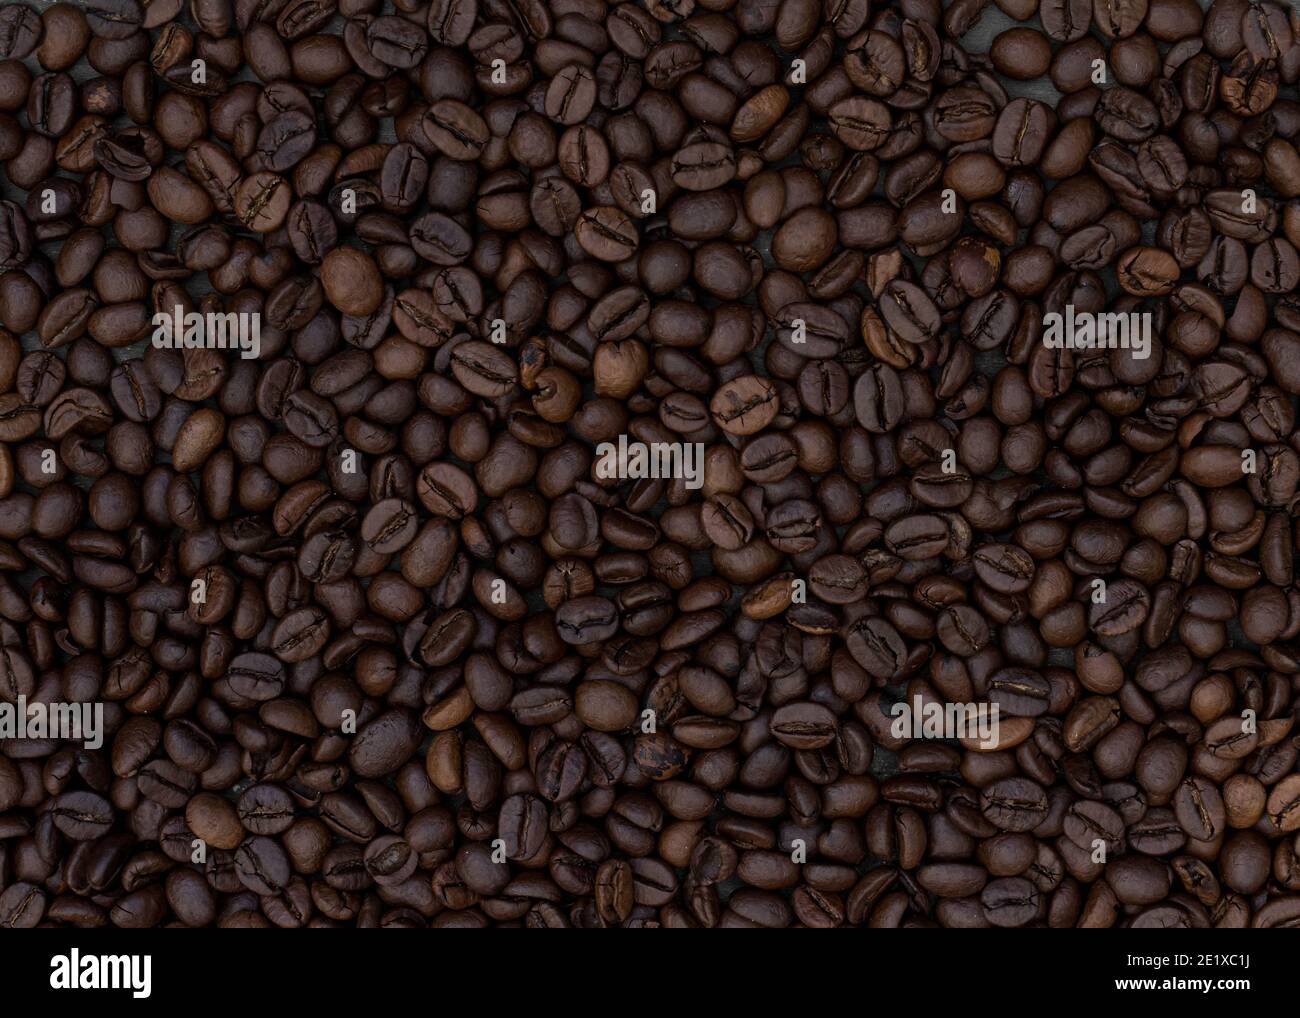 Fagioli di caffè di grandi dimensioni arrostiti al buio. Immagine orizzontale. Foto Stock